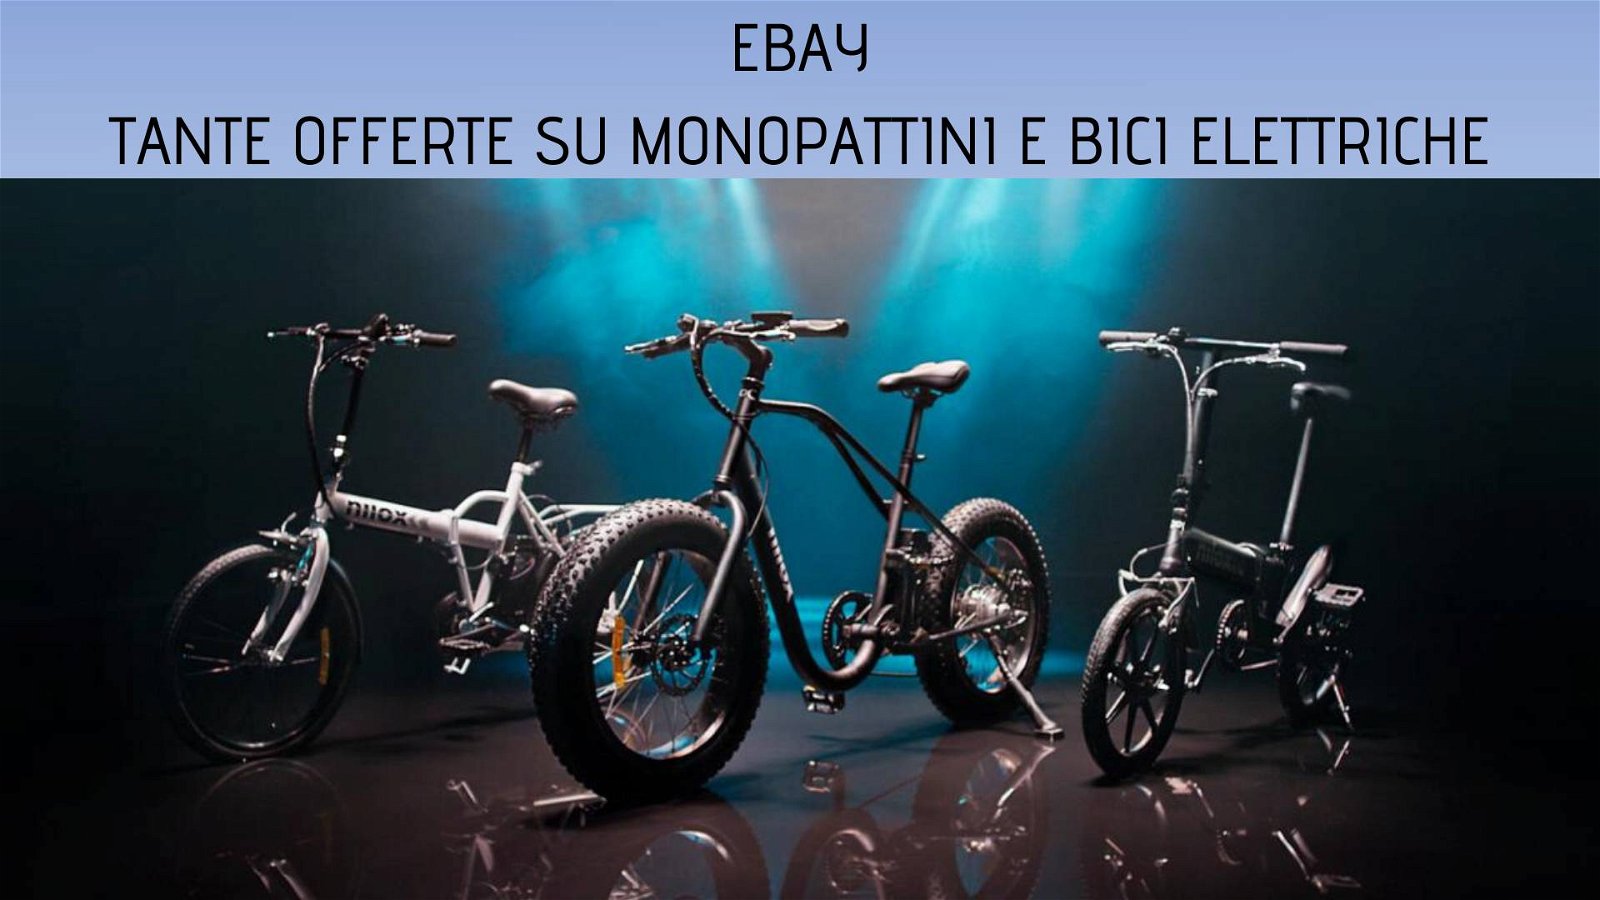 Immagine di eBay: sconti su bici e monopattini per approfittare del bonus statale!